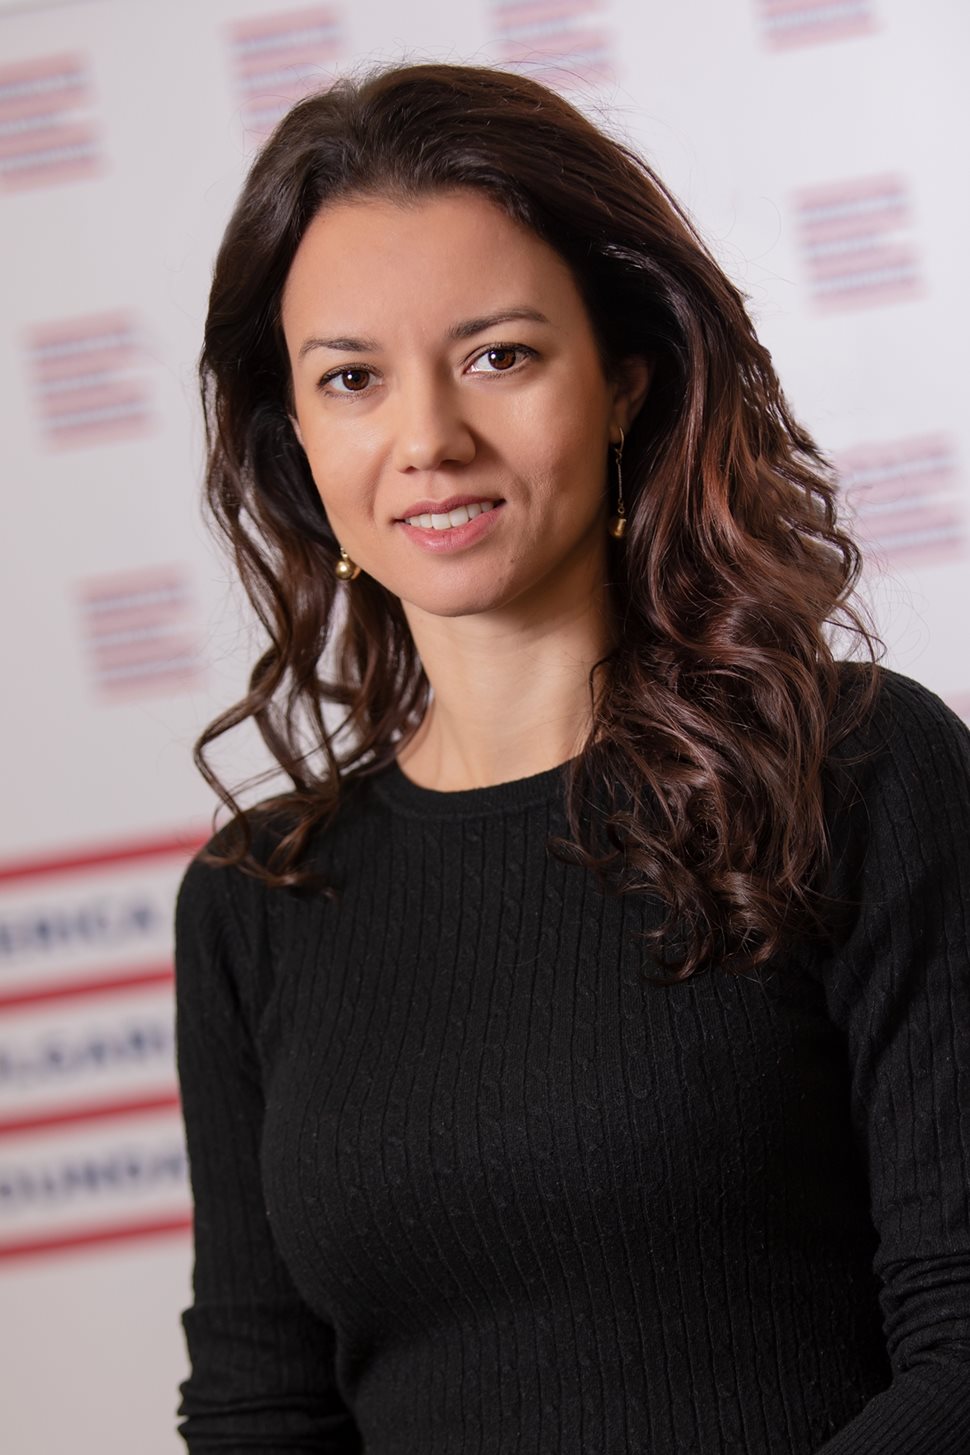 Наталия Митева има бакалавърска степен по международни отношения от Колумбия колидж и магистърска степен по публични политики от Мерилендския университет в САЩ. Участвала в няколко проекта на Програма на ООН за развитие в България.
